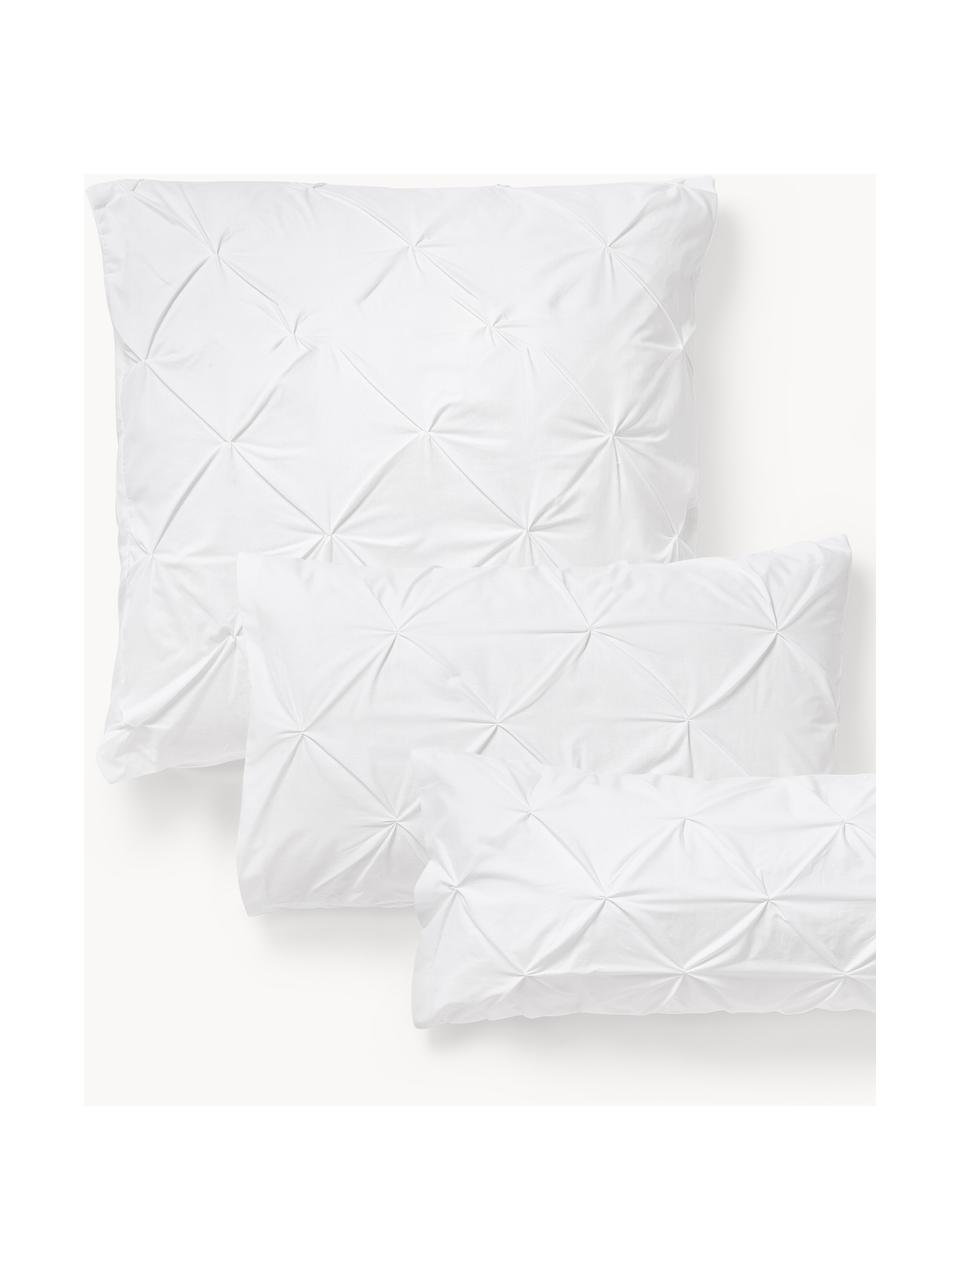 Funda de almohada de percal en look origami Brody, Blanco, An 45 x L 110 cm